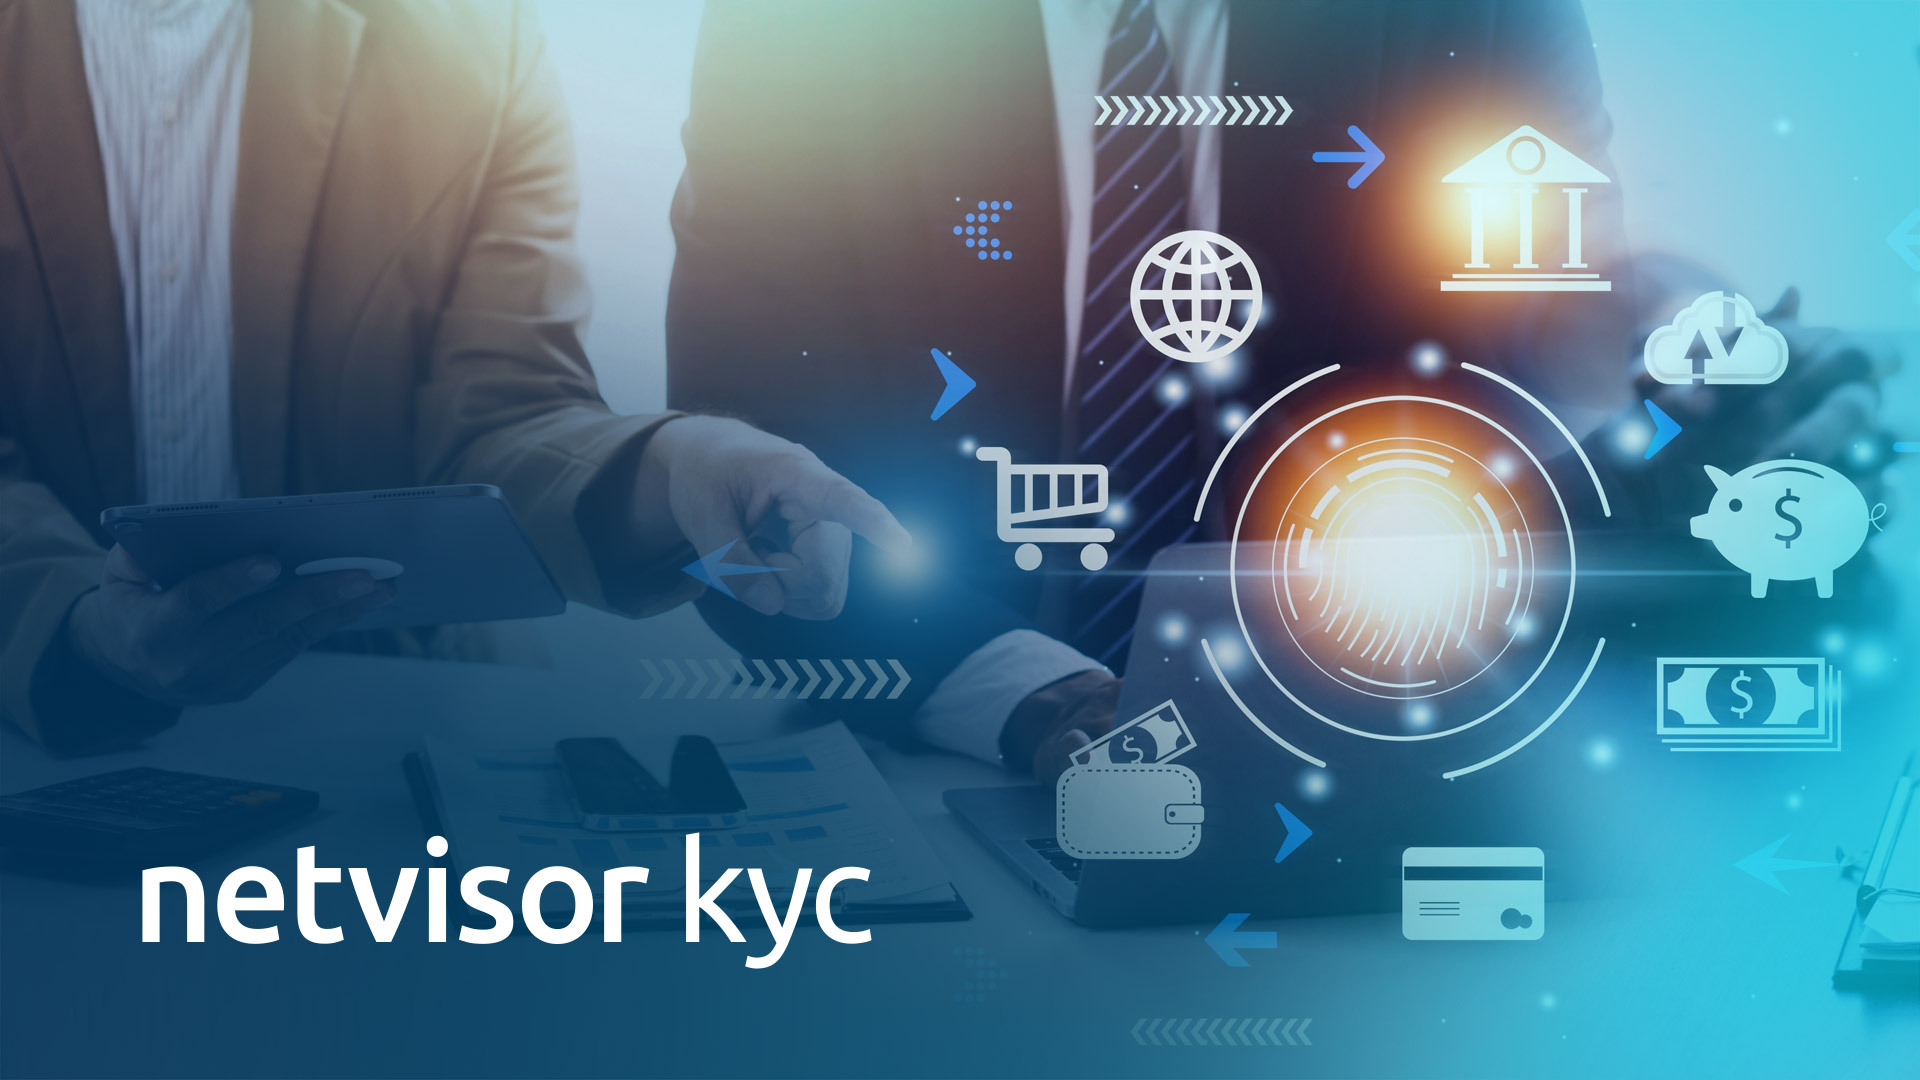 Netvisor KYC:n avulla tunnistat asiakkaasi rahapesulain vaateiden mukaisesti